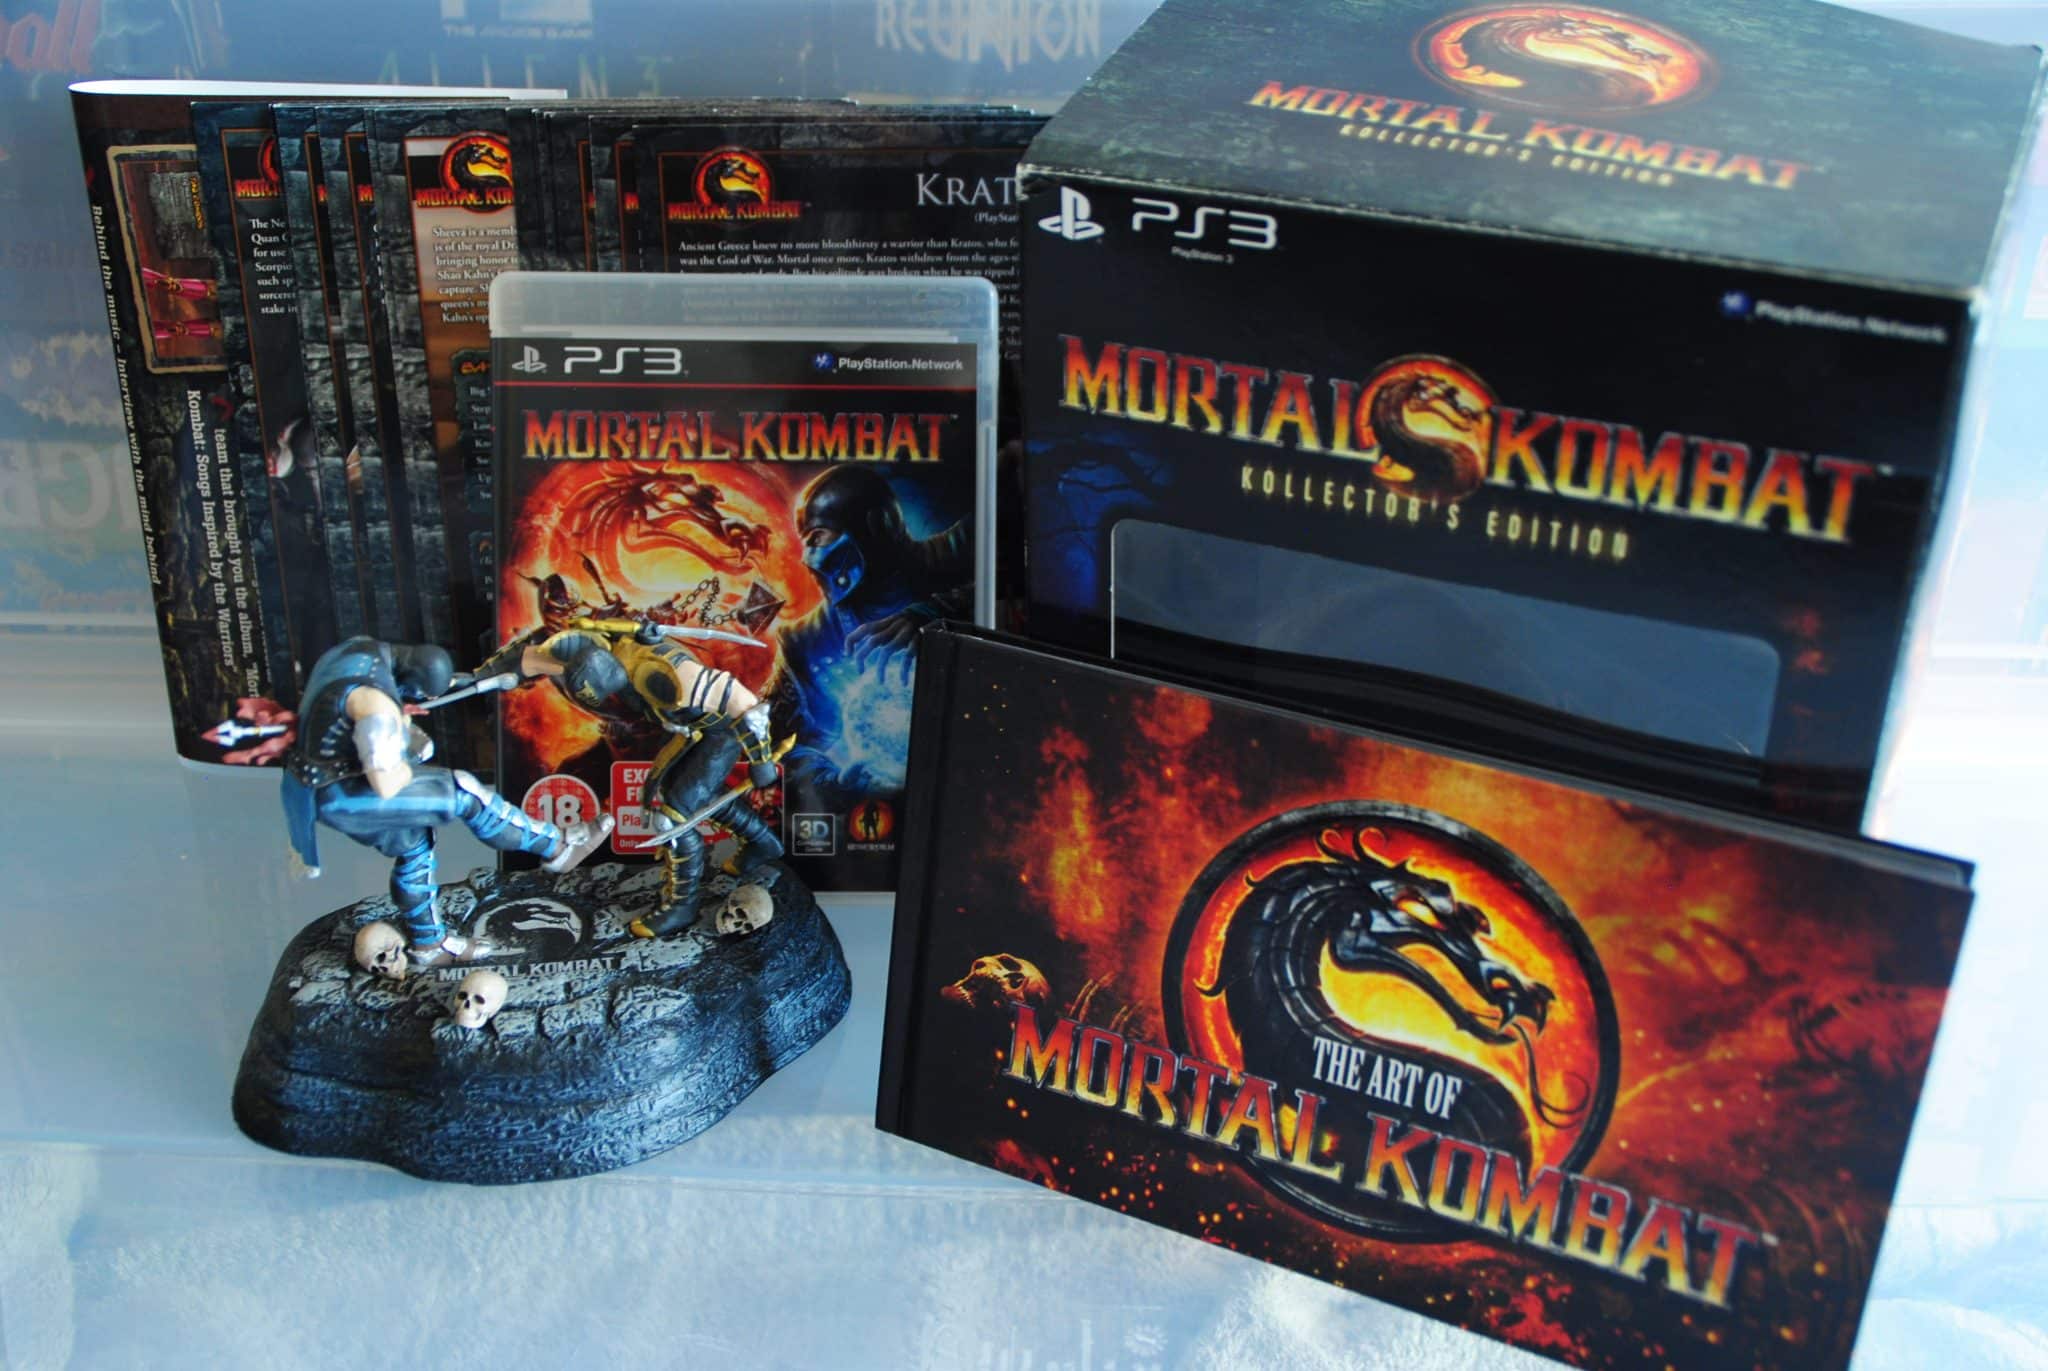 Коллектор мортал комбат. Фигурка Mortal Kombat Collectors Edition ps3. Мортал комбат Collectors Edition. Мортал комбат 1 Collectors Edition.